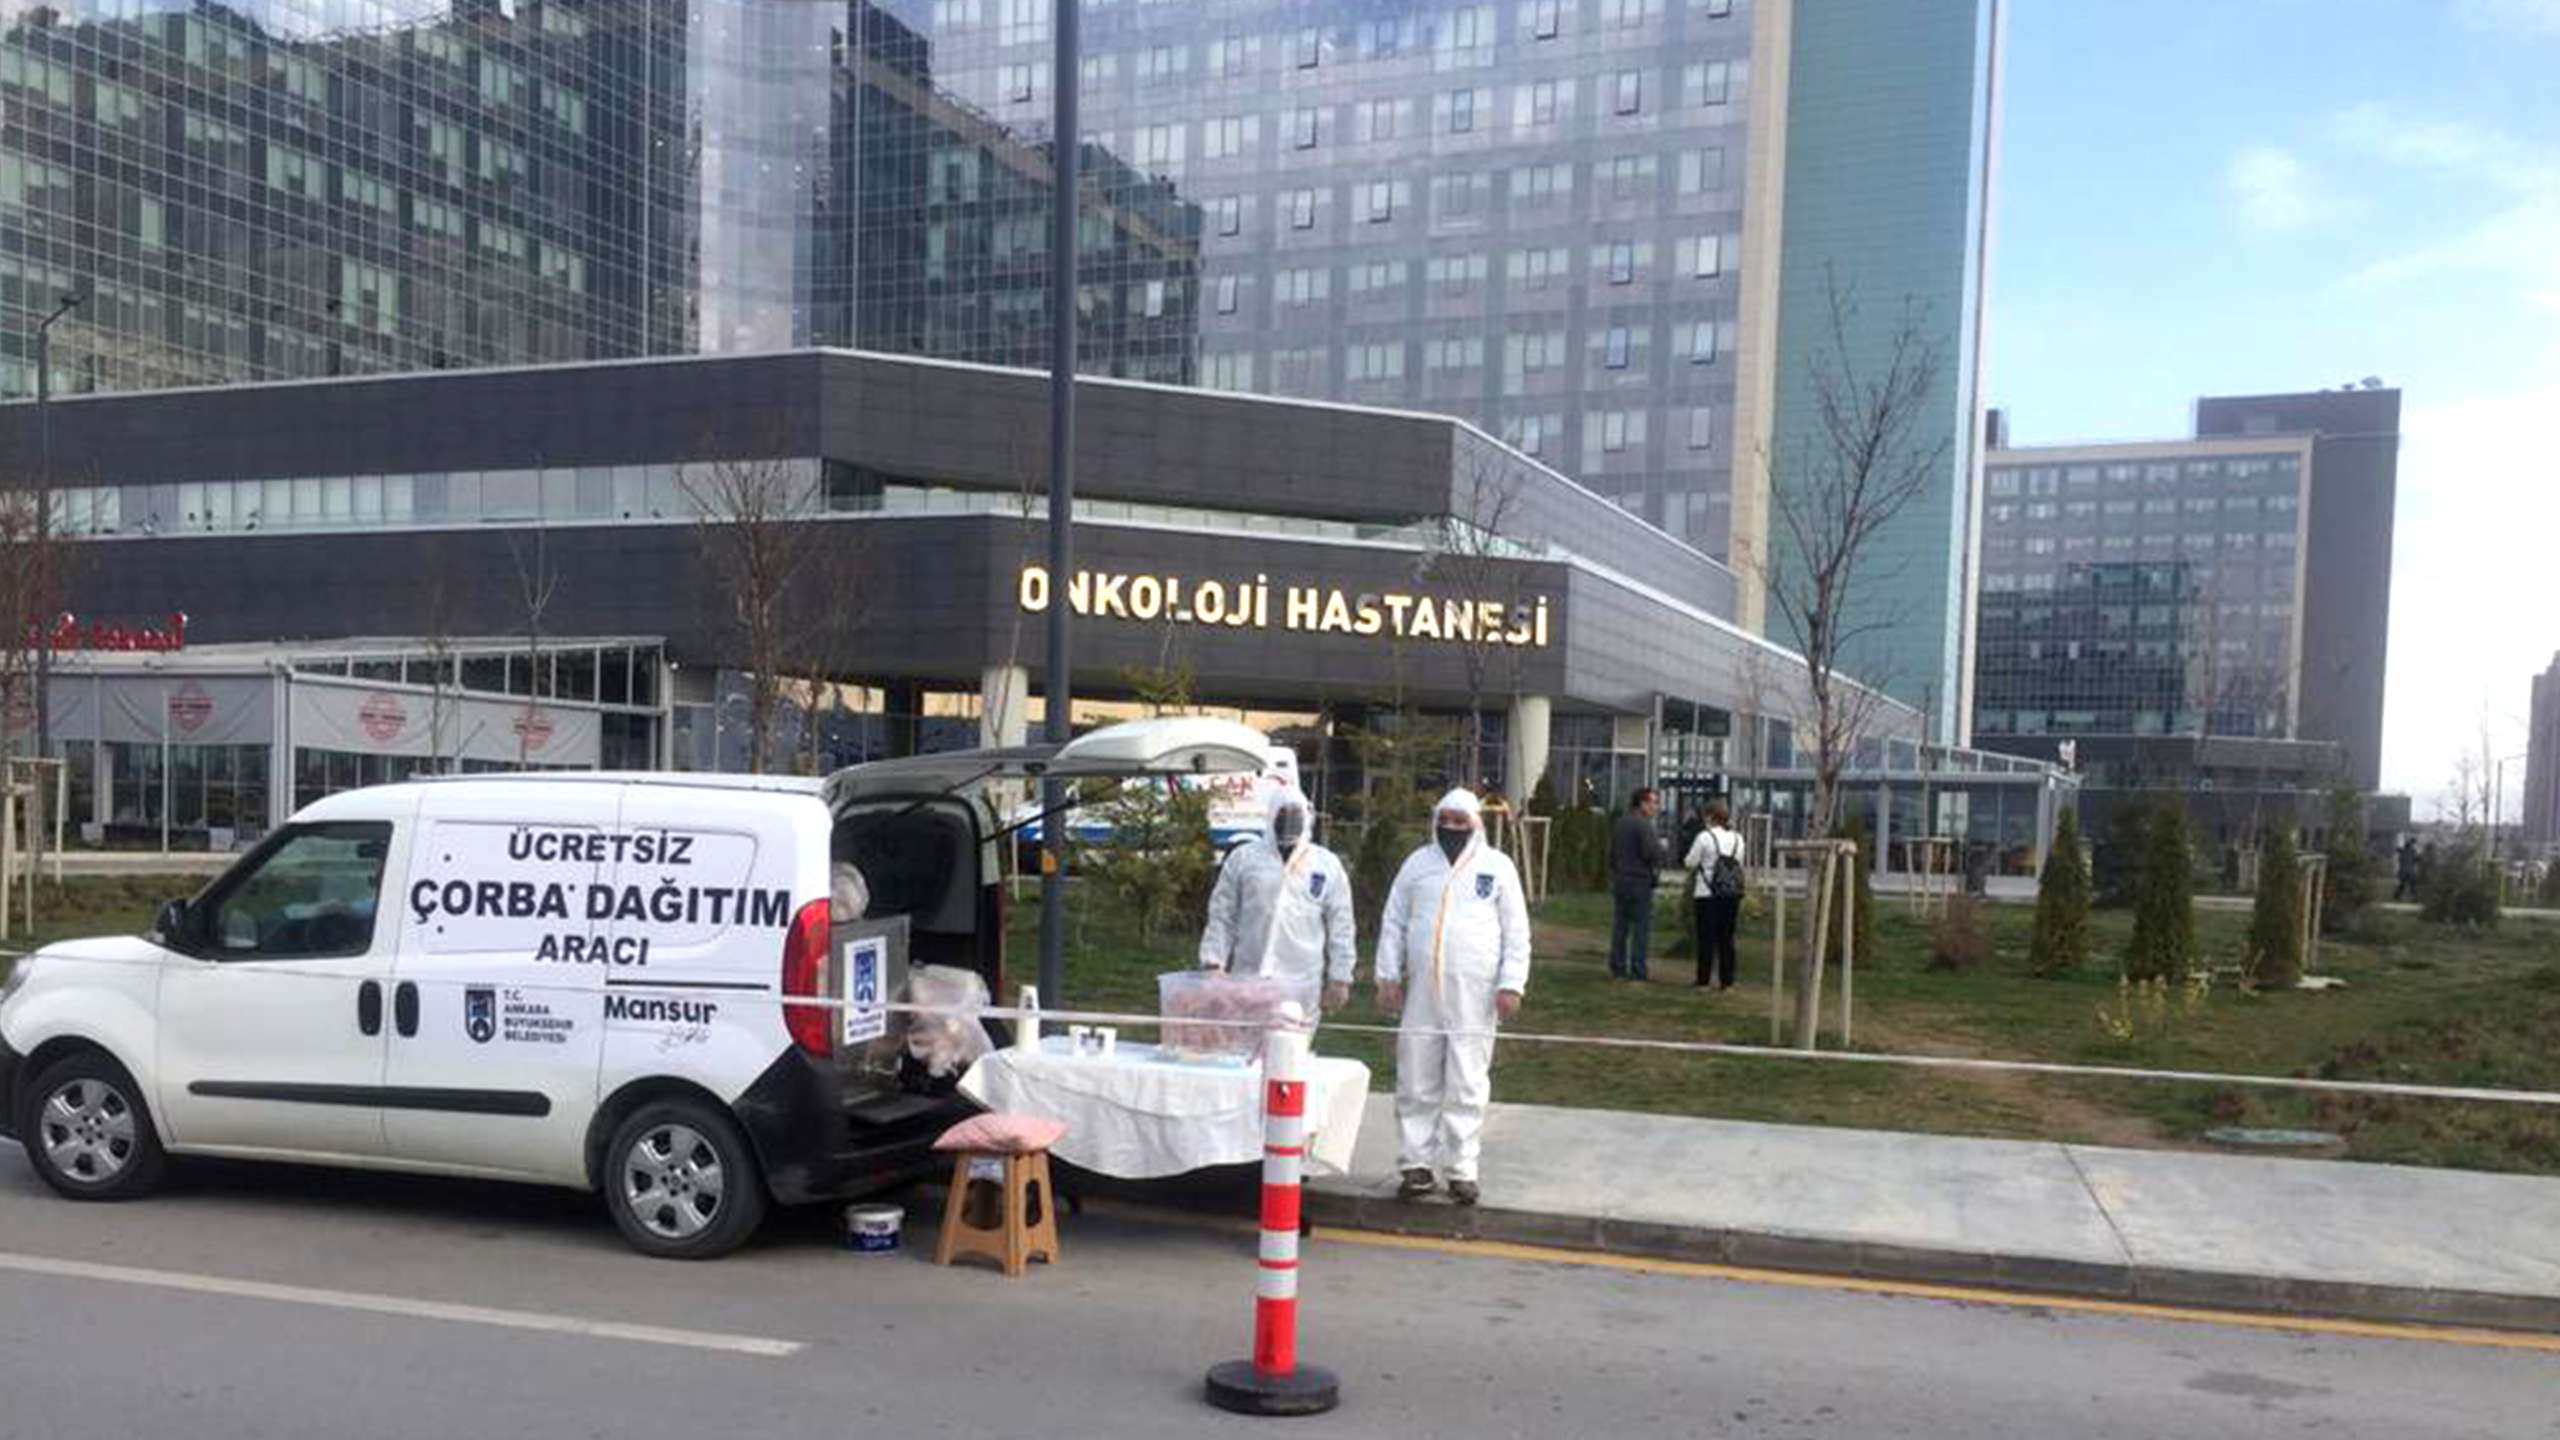 Ankara Büyükşehir Belediye Başkanımız Sn. Mansur YAVAŞ’ın talimatıyla, sağlık çalışanlarımız için Hacettepe, Zekai Tahir Burak ve Şehir Hastanesinde sıcak çorba dağıtımına başlandı. #6MilyonTekYürek